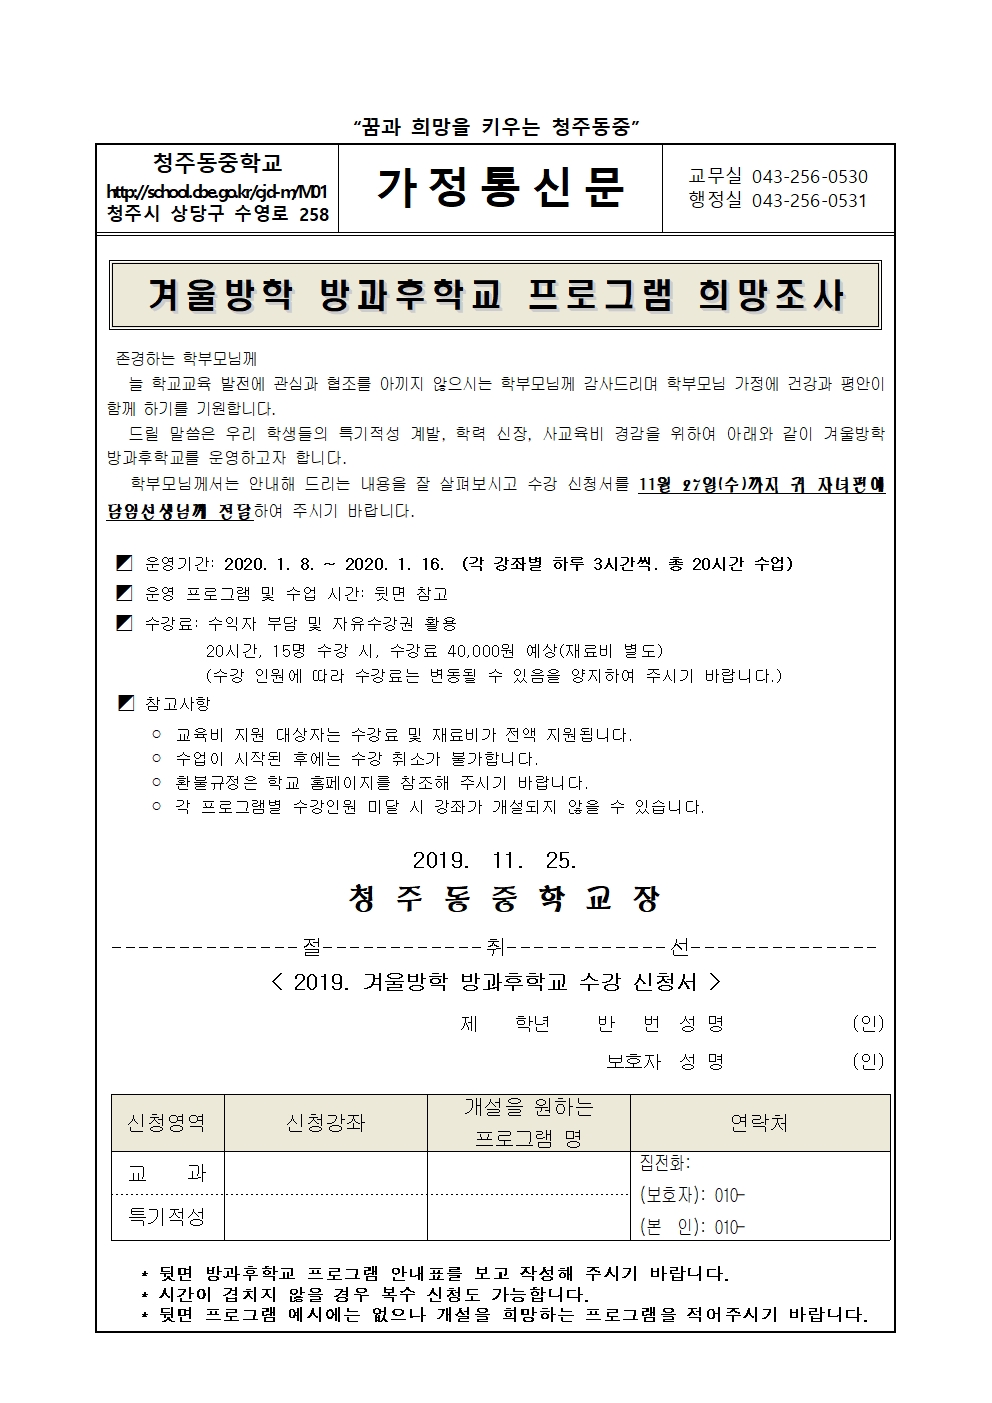 2019 겨울방학 방과후학교 수요조사 가정통신문001